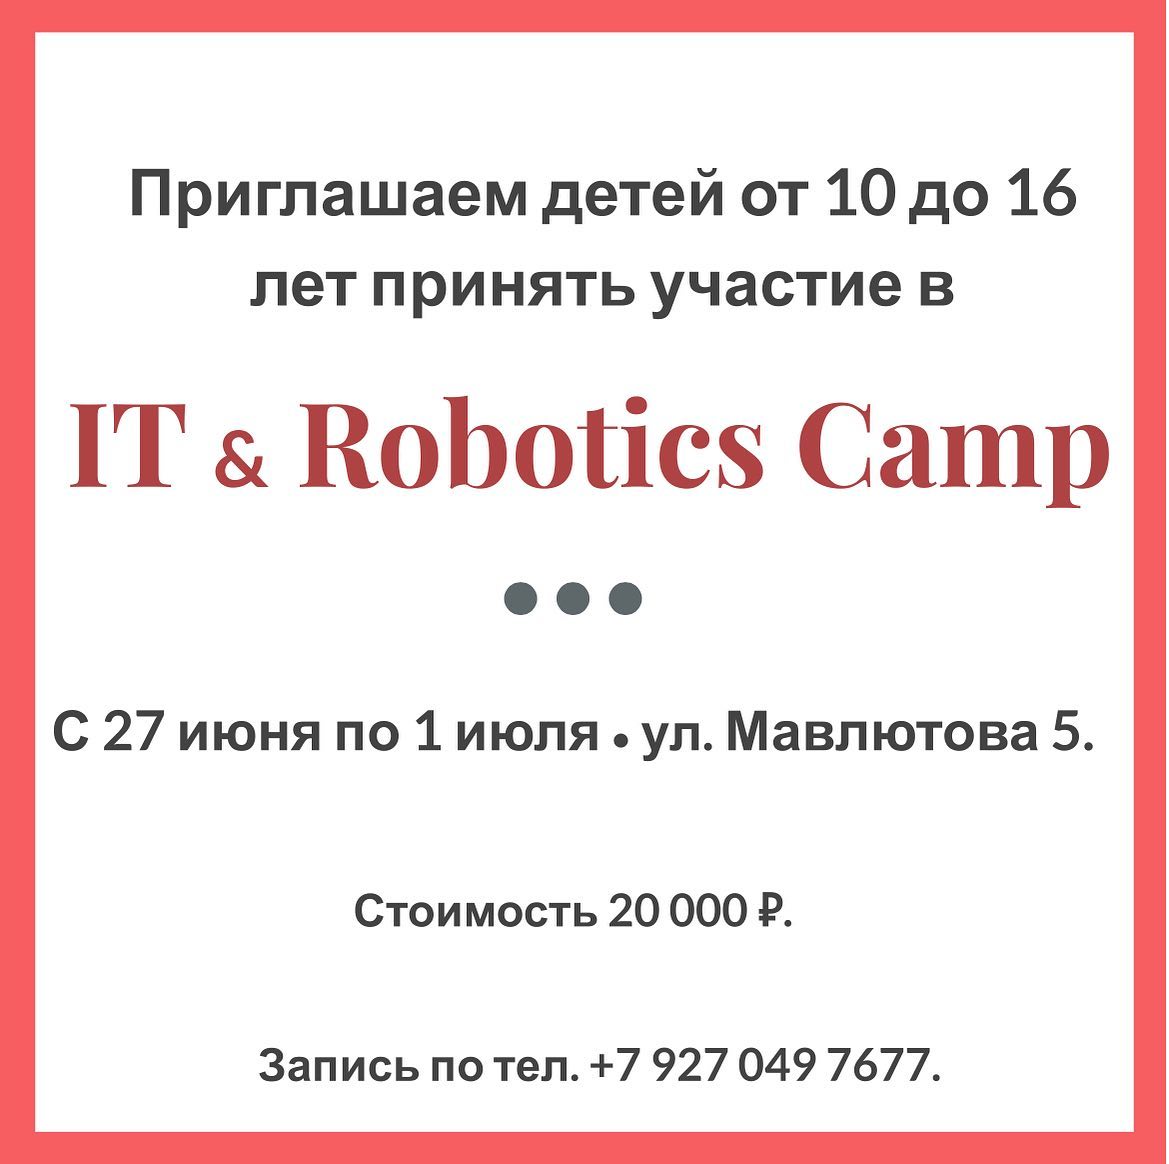 Приглашаем детей от 10 до 16 лет в летний лагерь по робототехнике и пр...